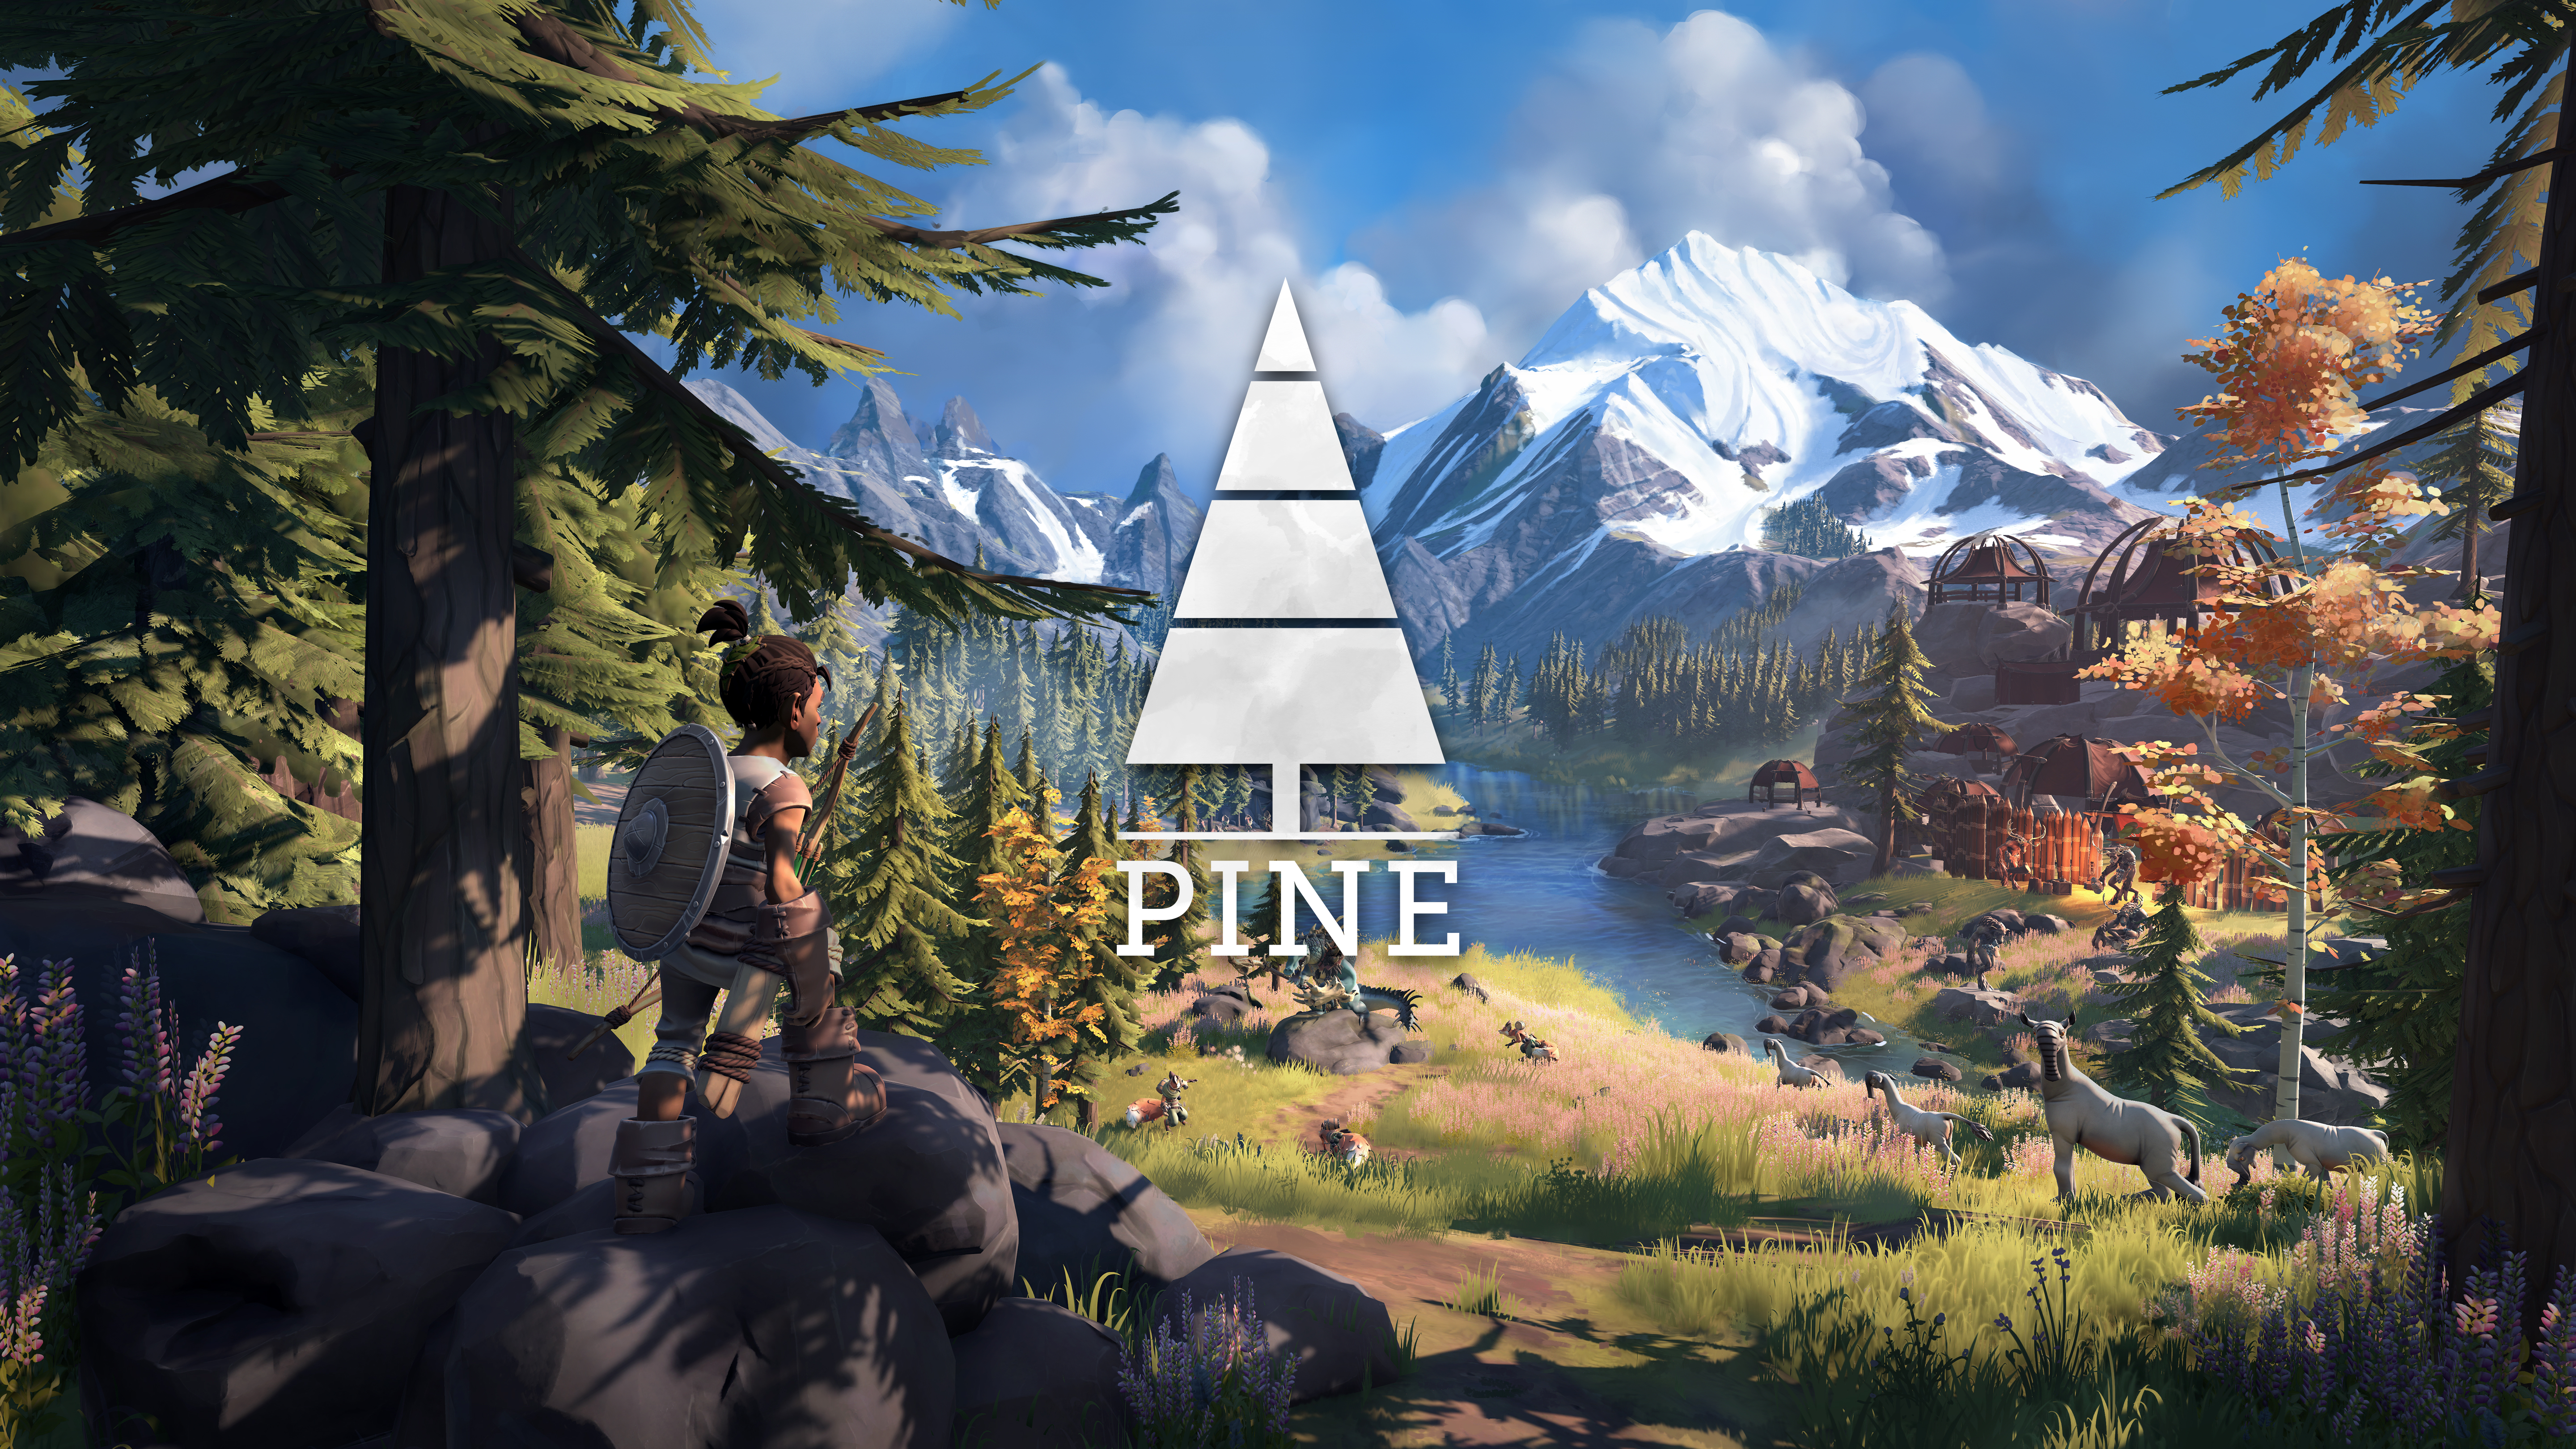 Pine_KeyArt_Horizontal_Large.png